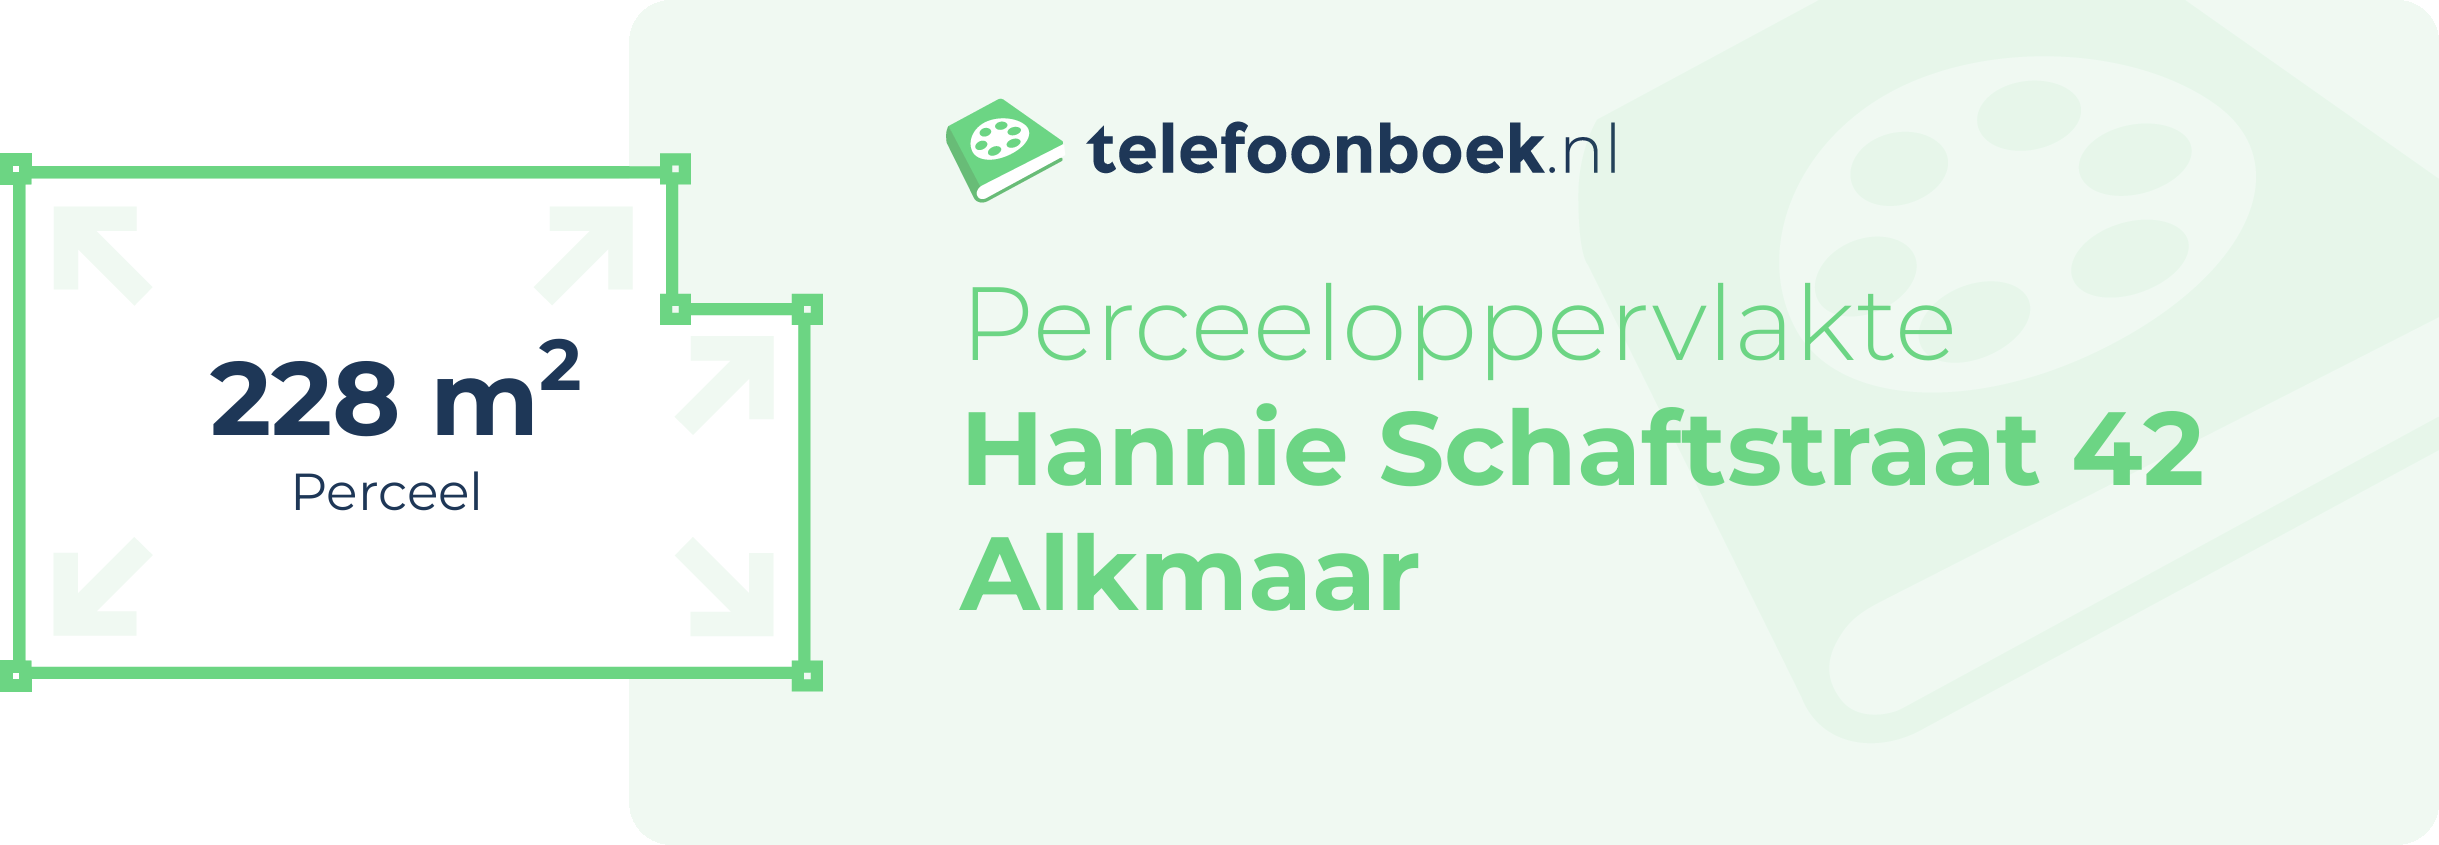 Perceeloppervlakte Hannie Schaftstraat 42 Alkmaar